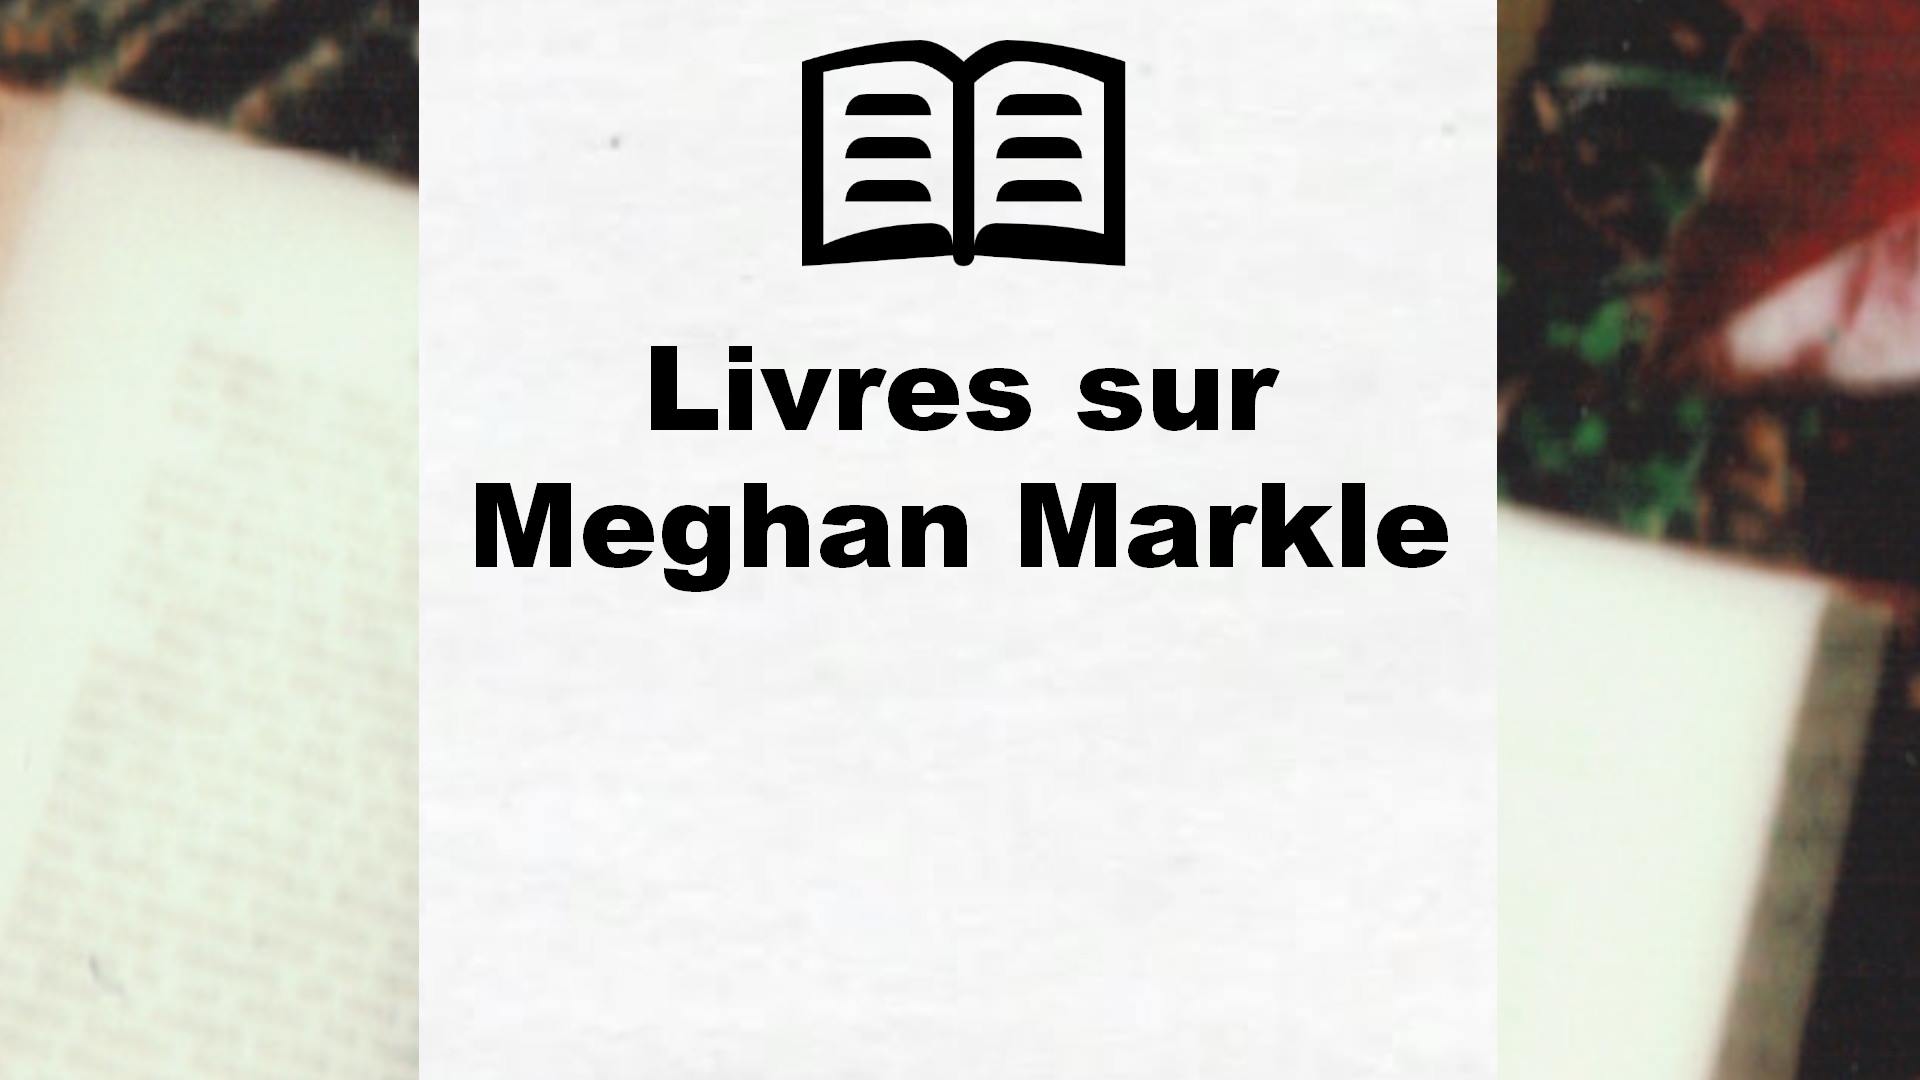 Livres sur Meghan Markle